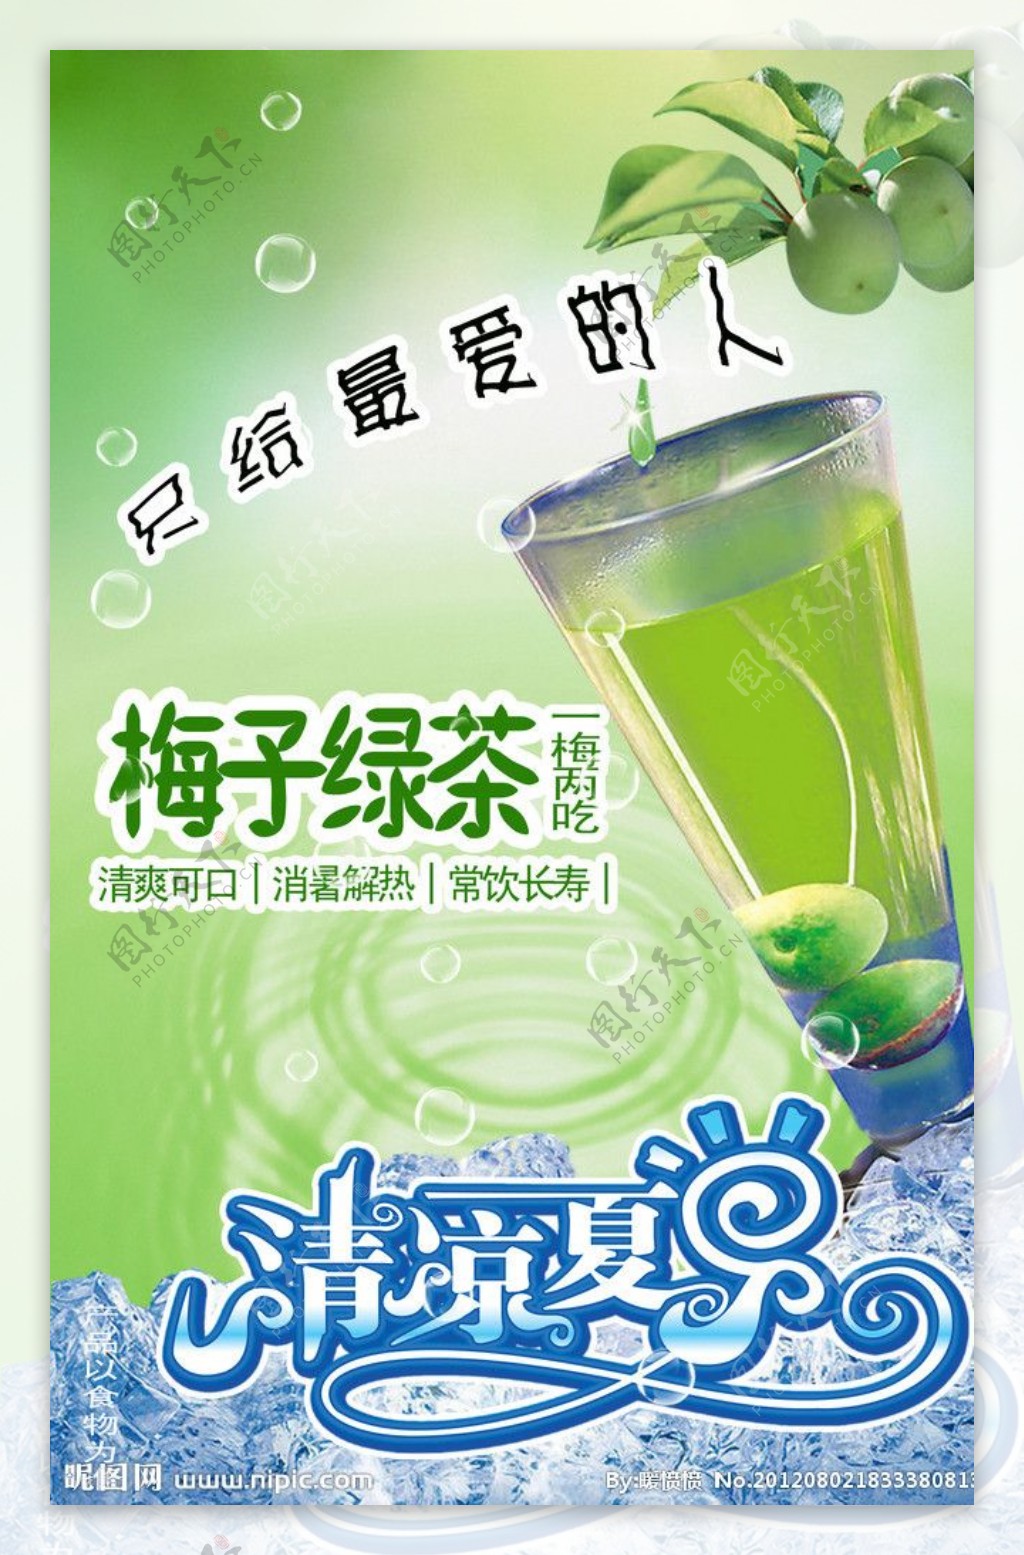 梅子绿茶海报图片